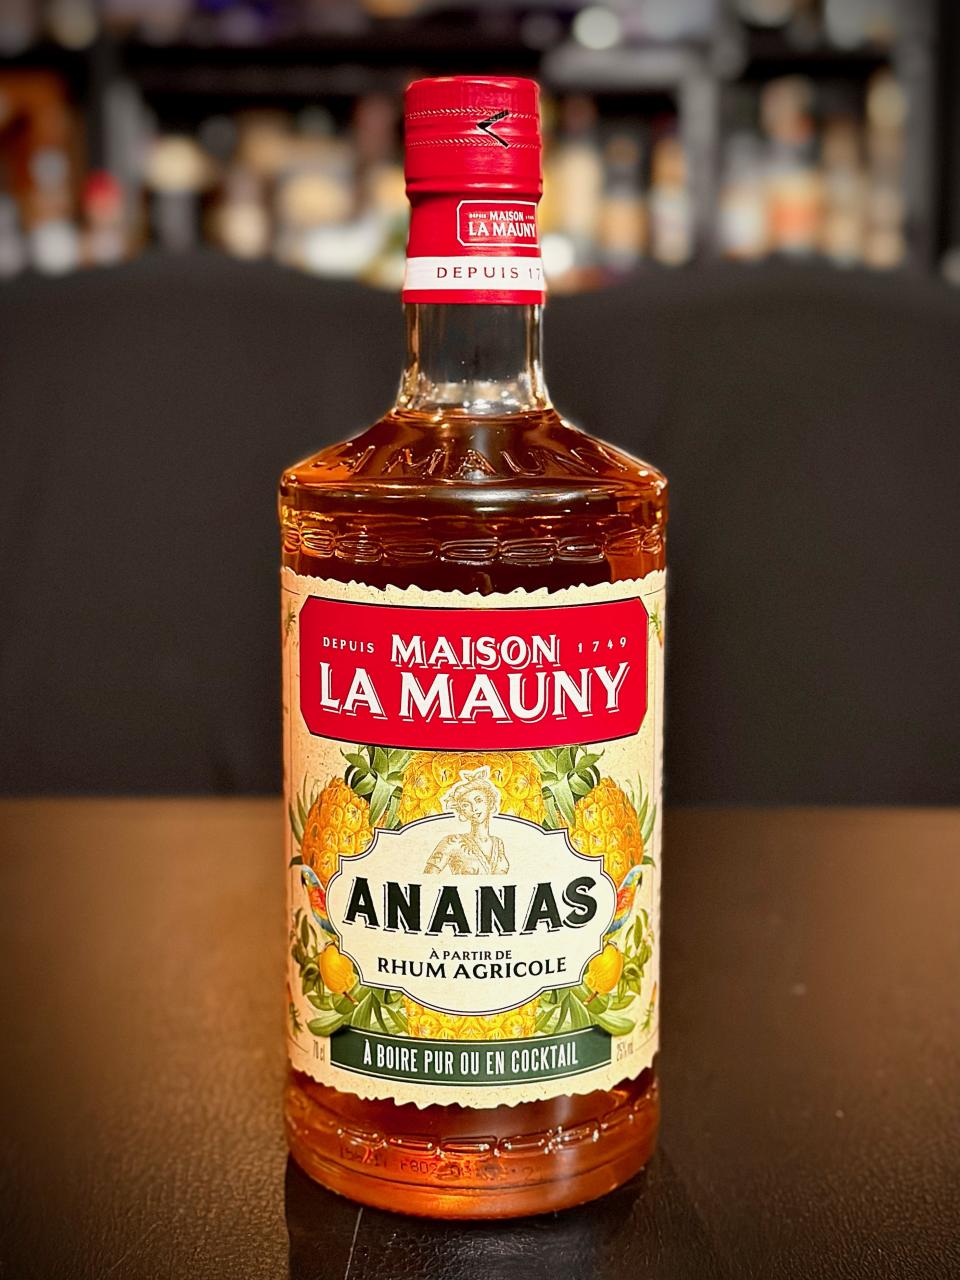 ラム酒、ラマウニアナナス 再入荷/Rum La mauny ananas re stocked